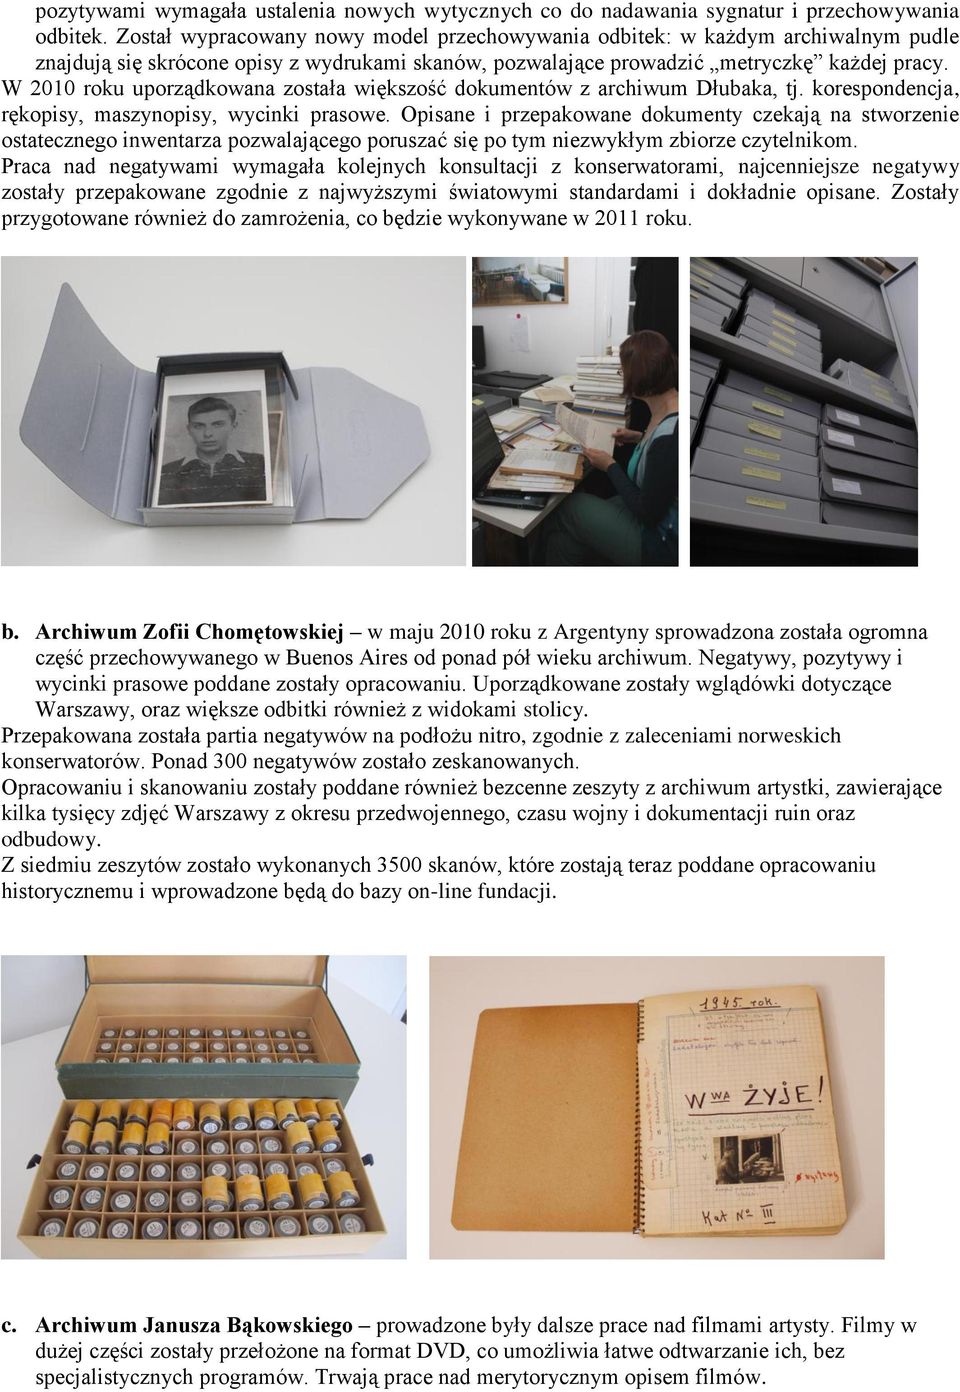 W 2010 roku uporządkowana została większość dokumentów z archiwum Dłubaka, tj. korespondencja, rękopisy, maszynopisy, wycinki prasowe.